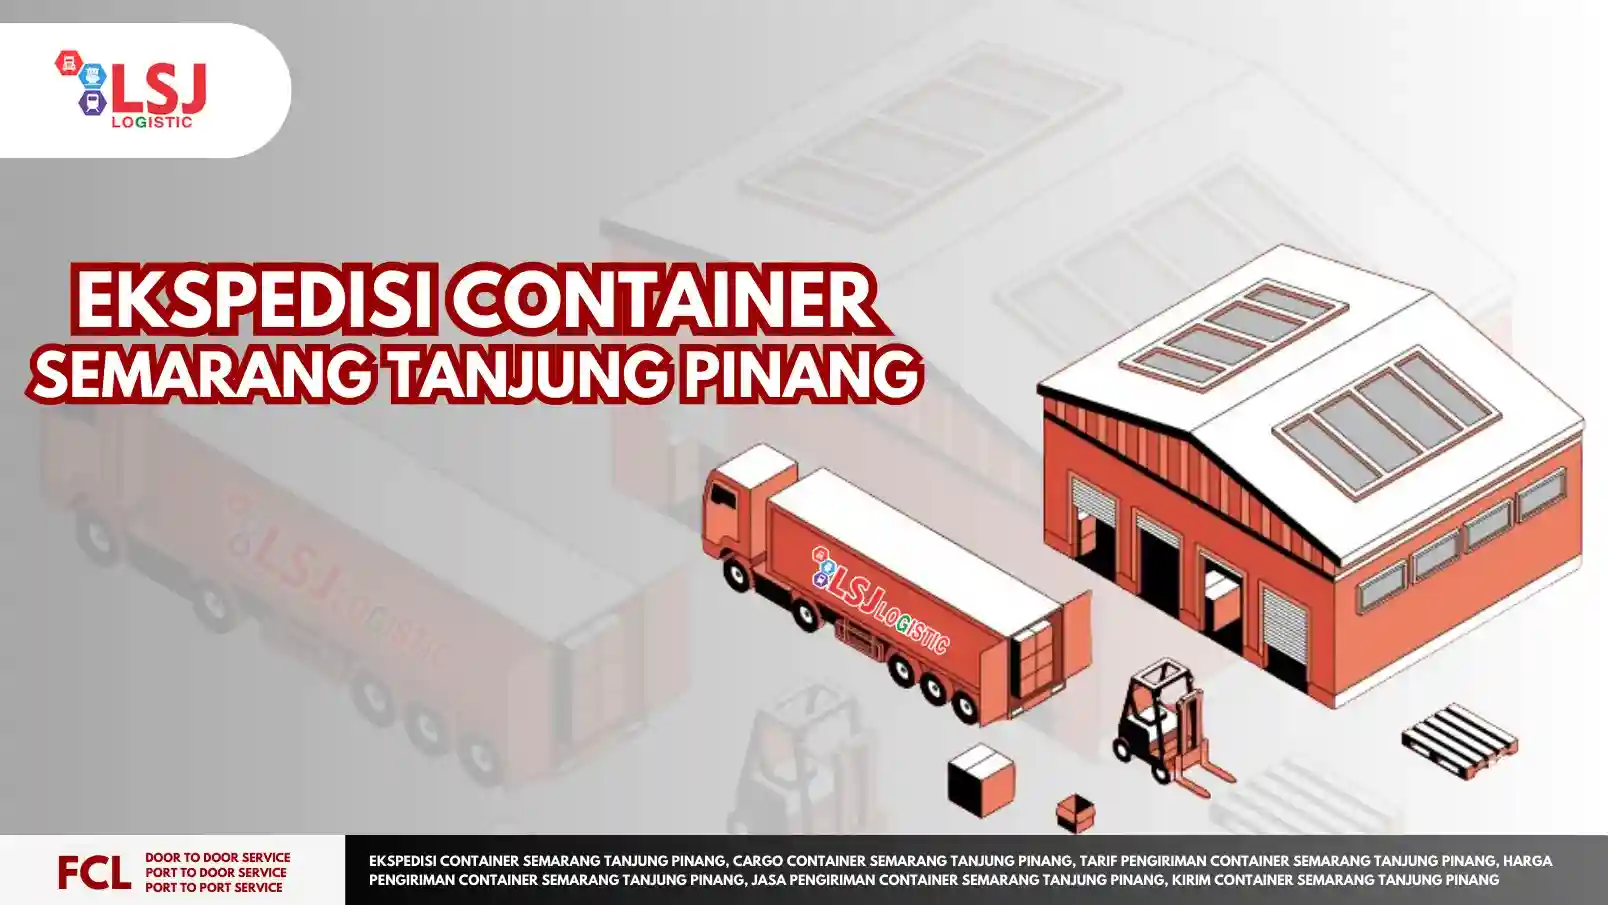 Ekspedisi Container Semarang Tanjung Pinang